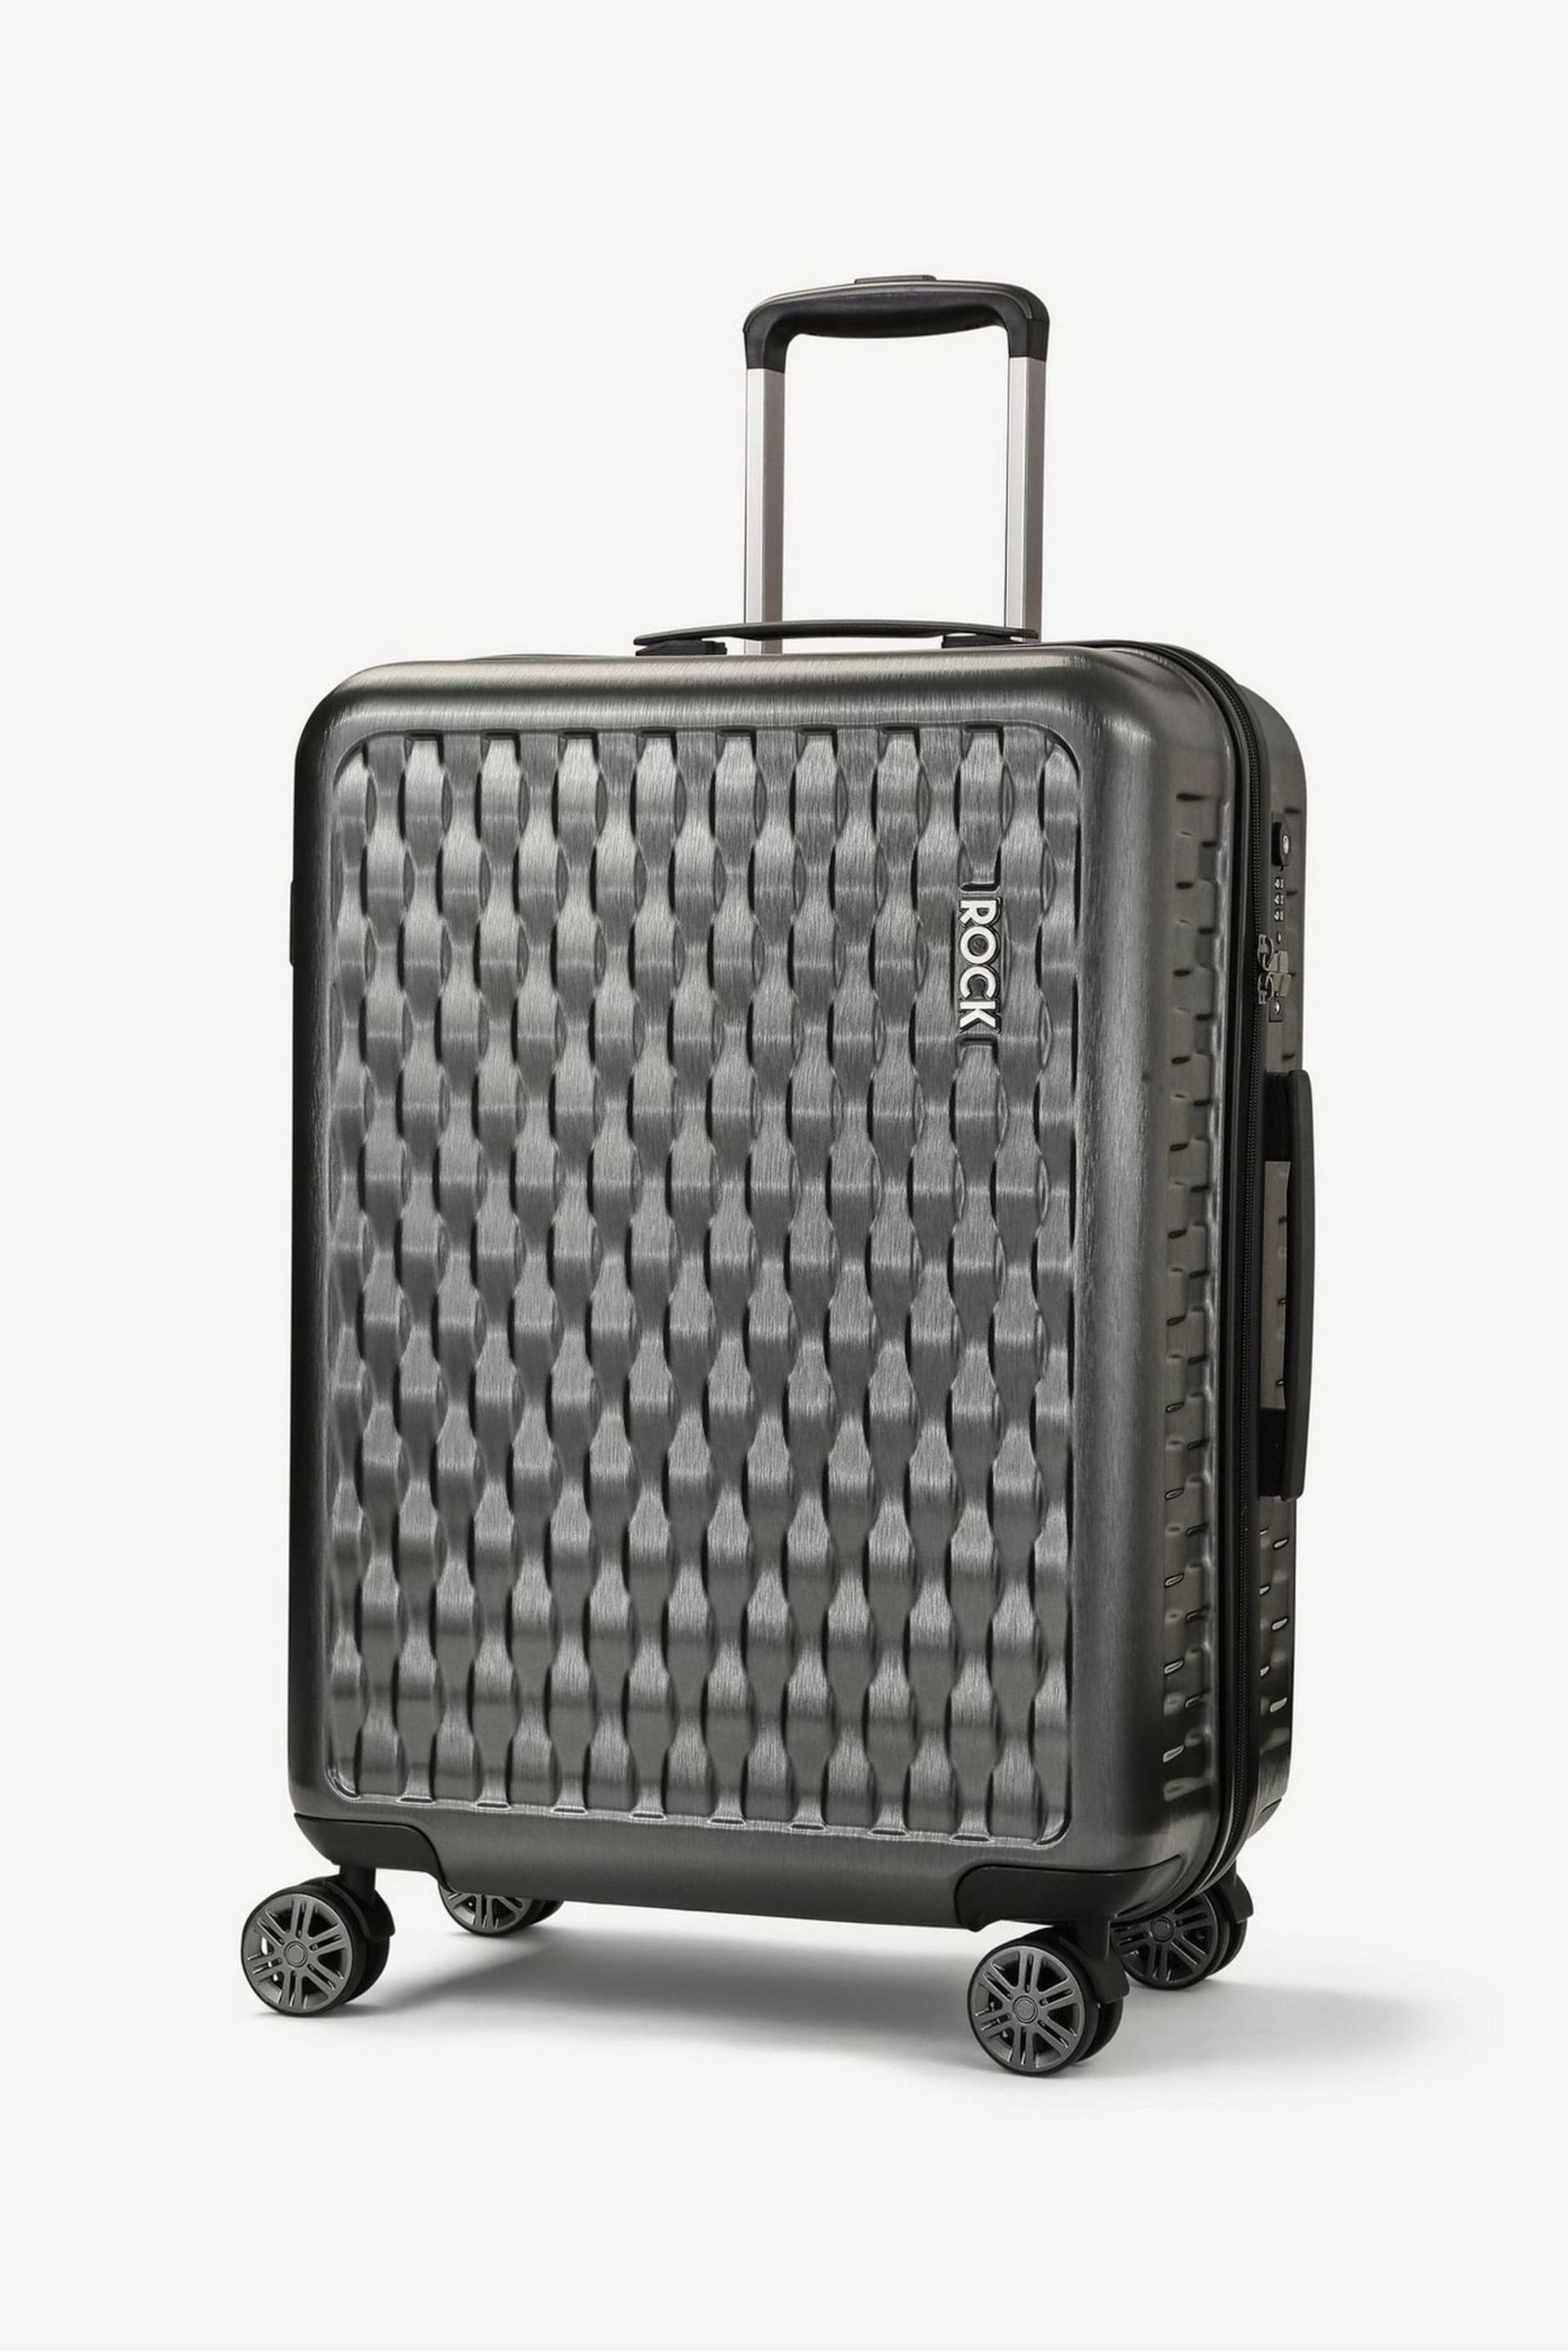 Rock Luggage Allure Medium Suitcase - Image 1 of 6